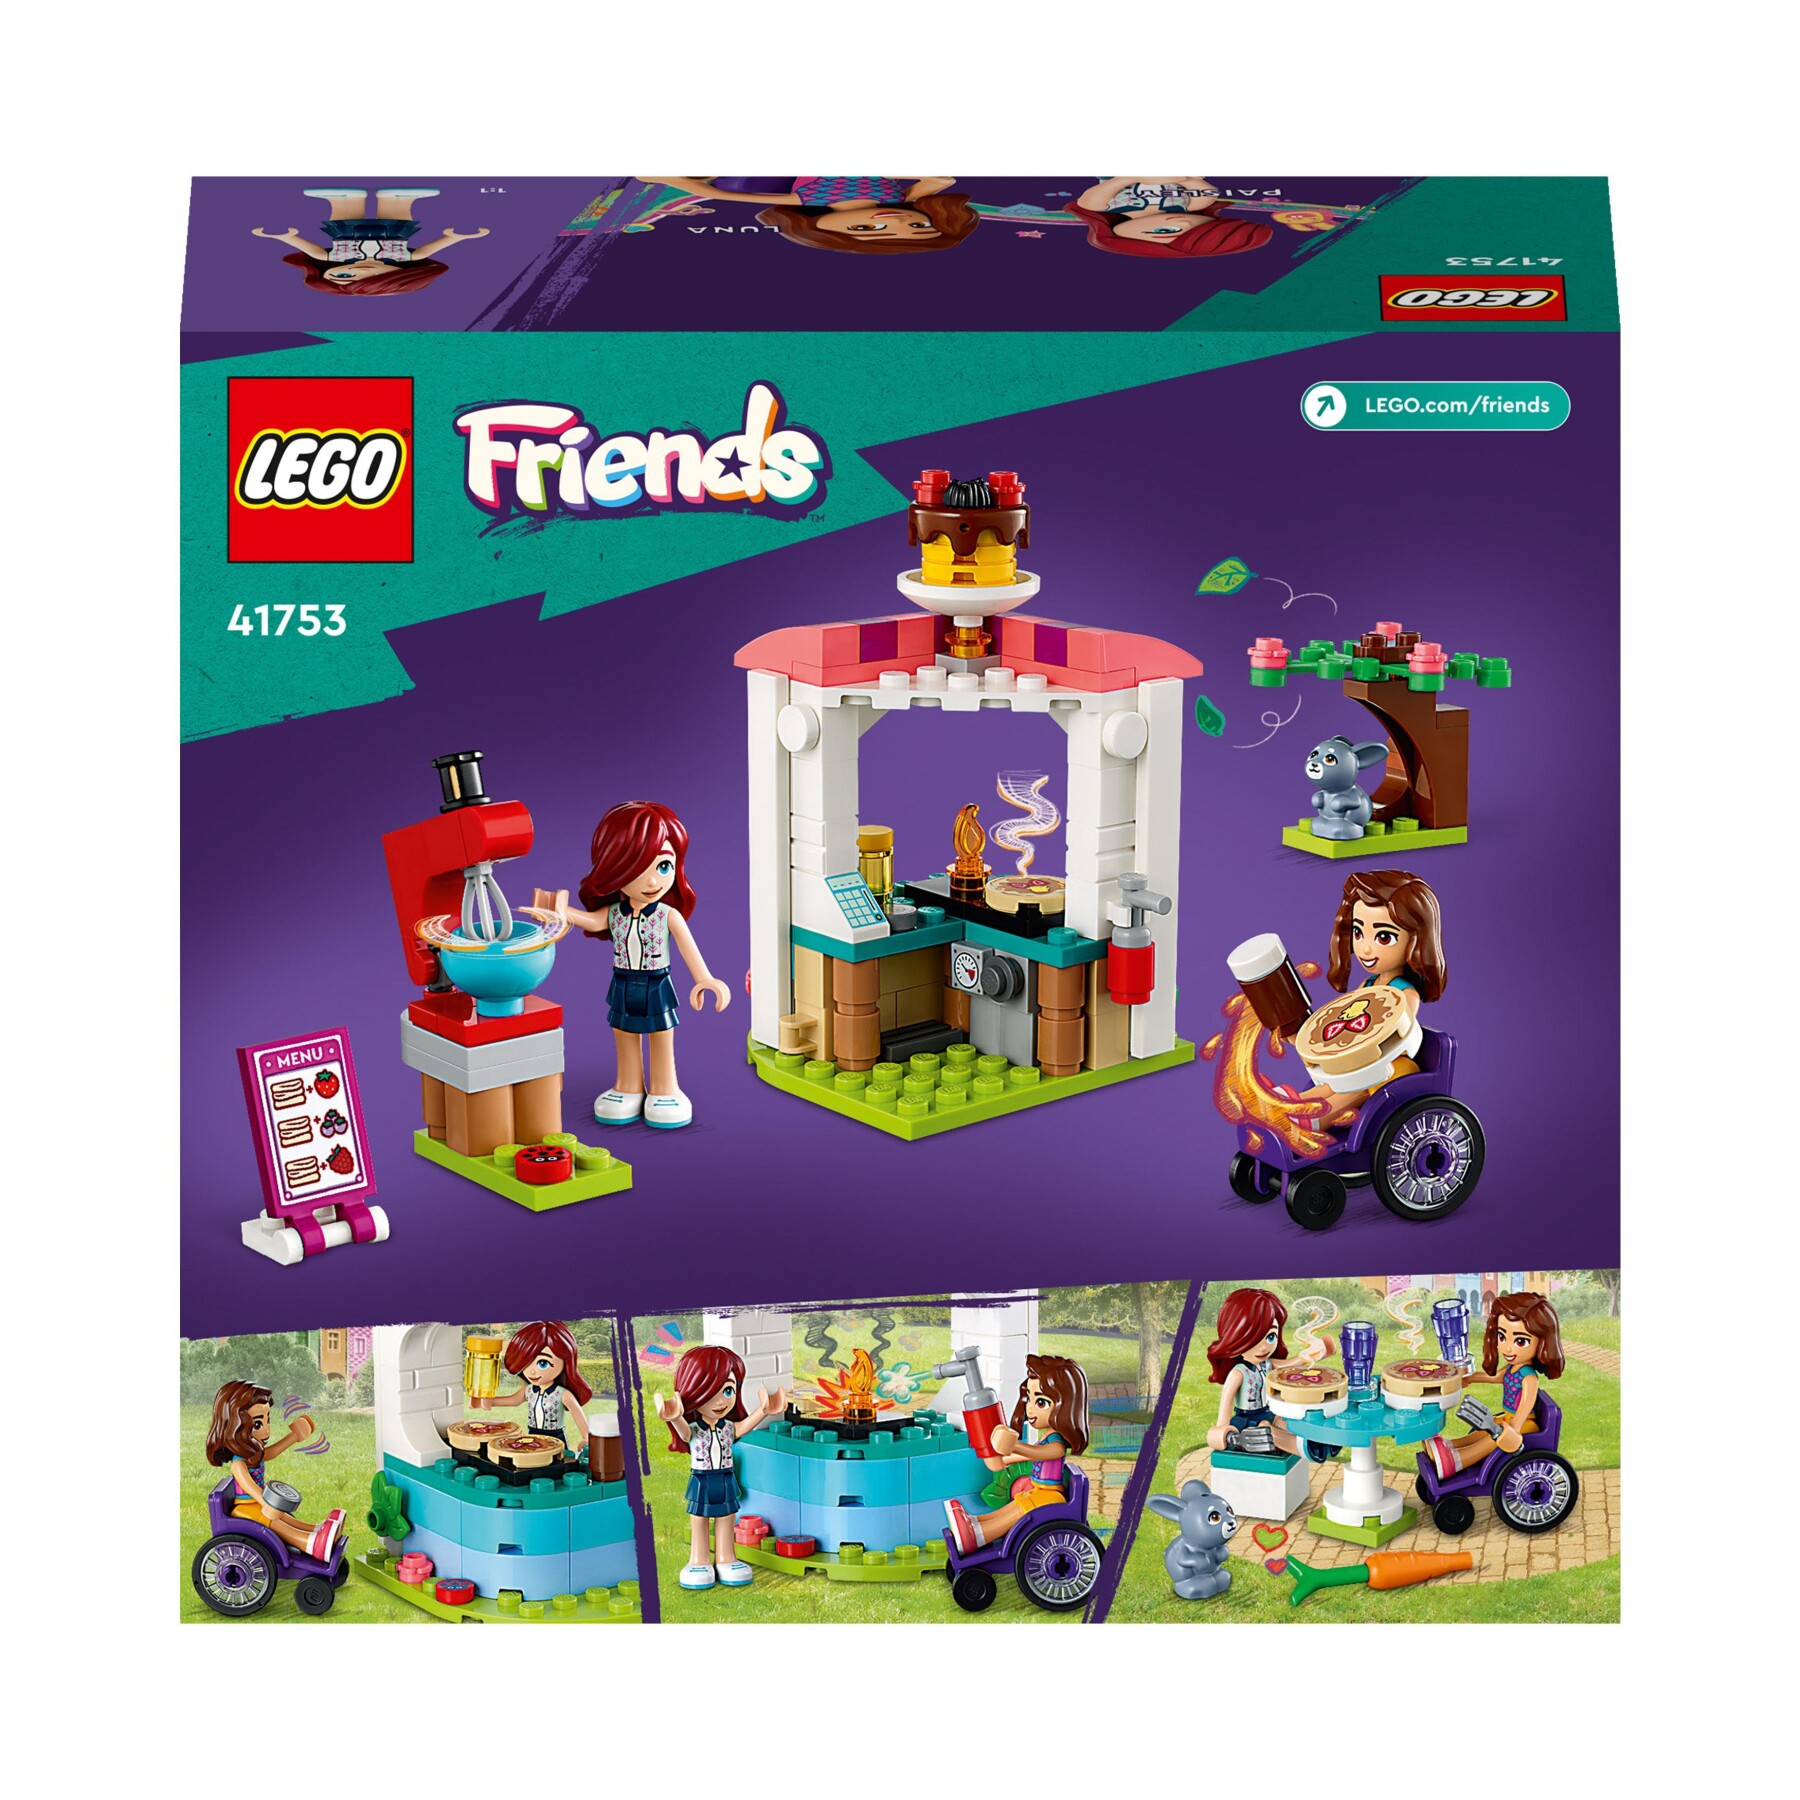 Lego friends 41753 negozio di pancake, giochi creativi per bambini e bambine  6+ anni con mini bamboline e coniglio giocattolo - Toys Center